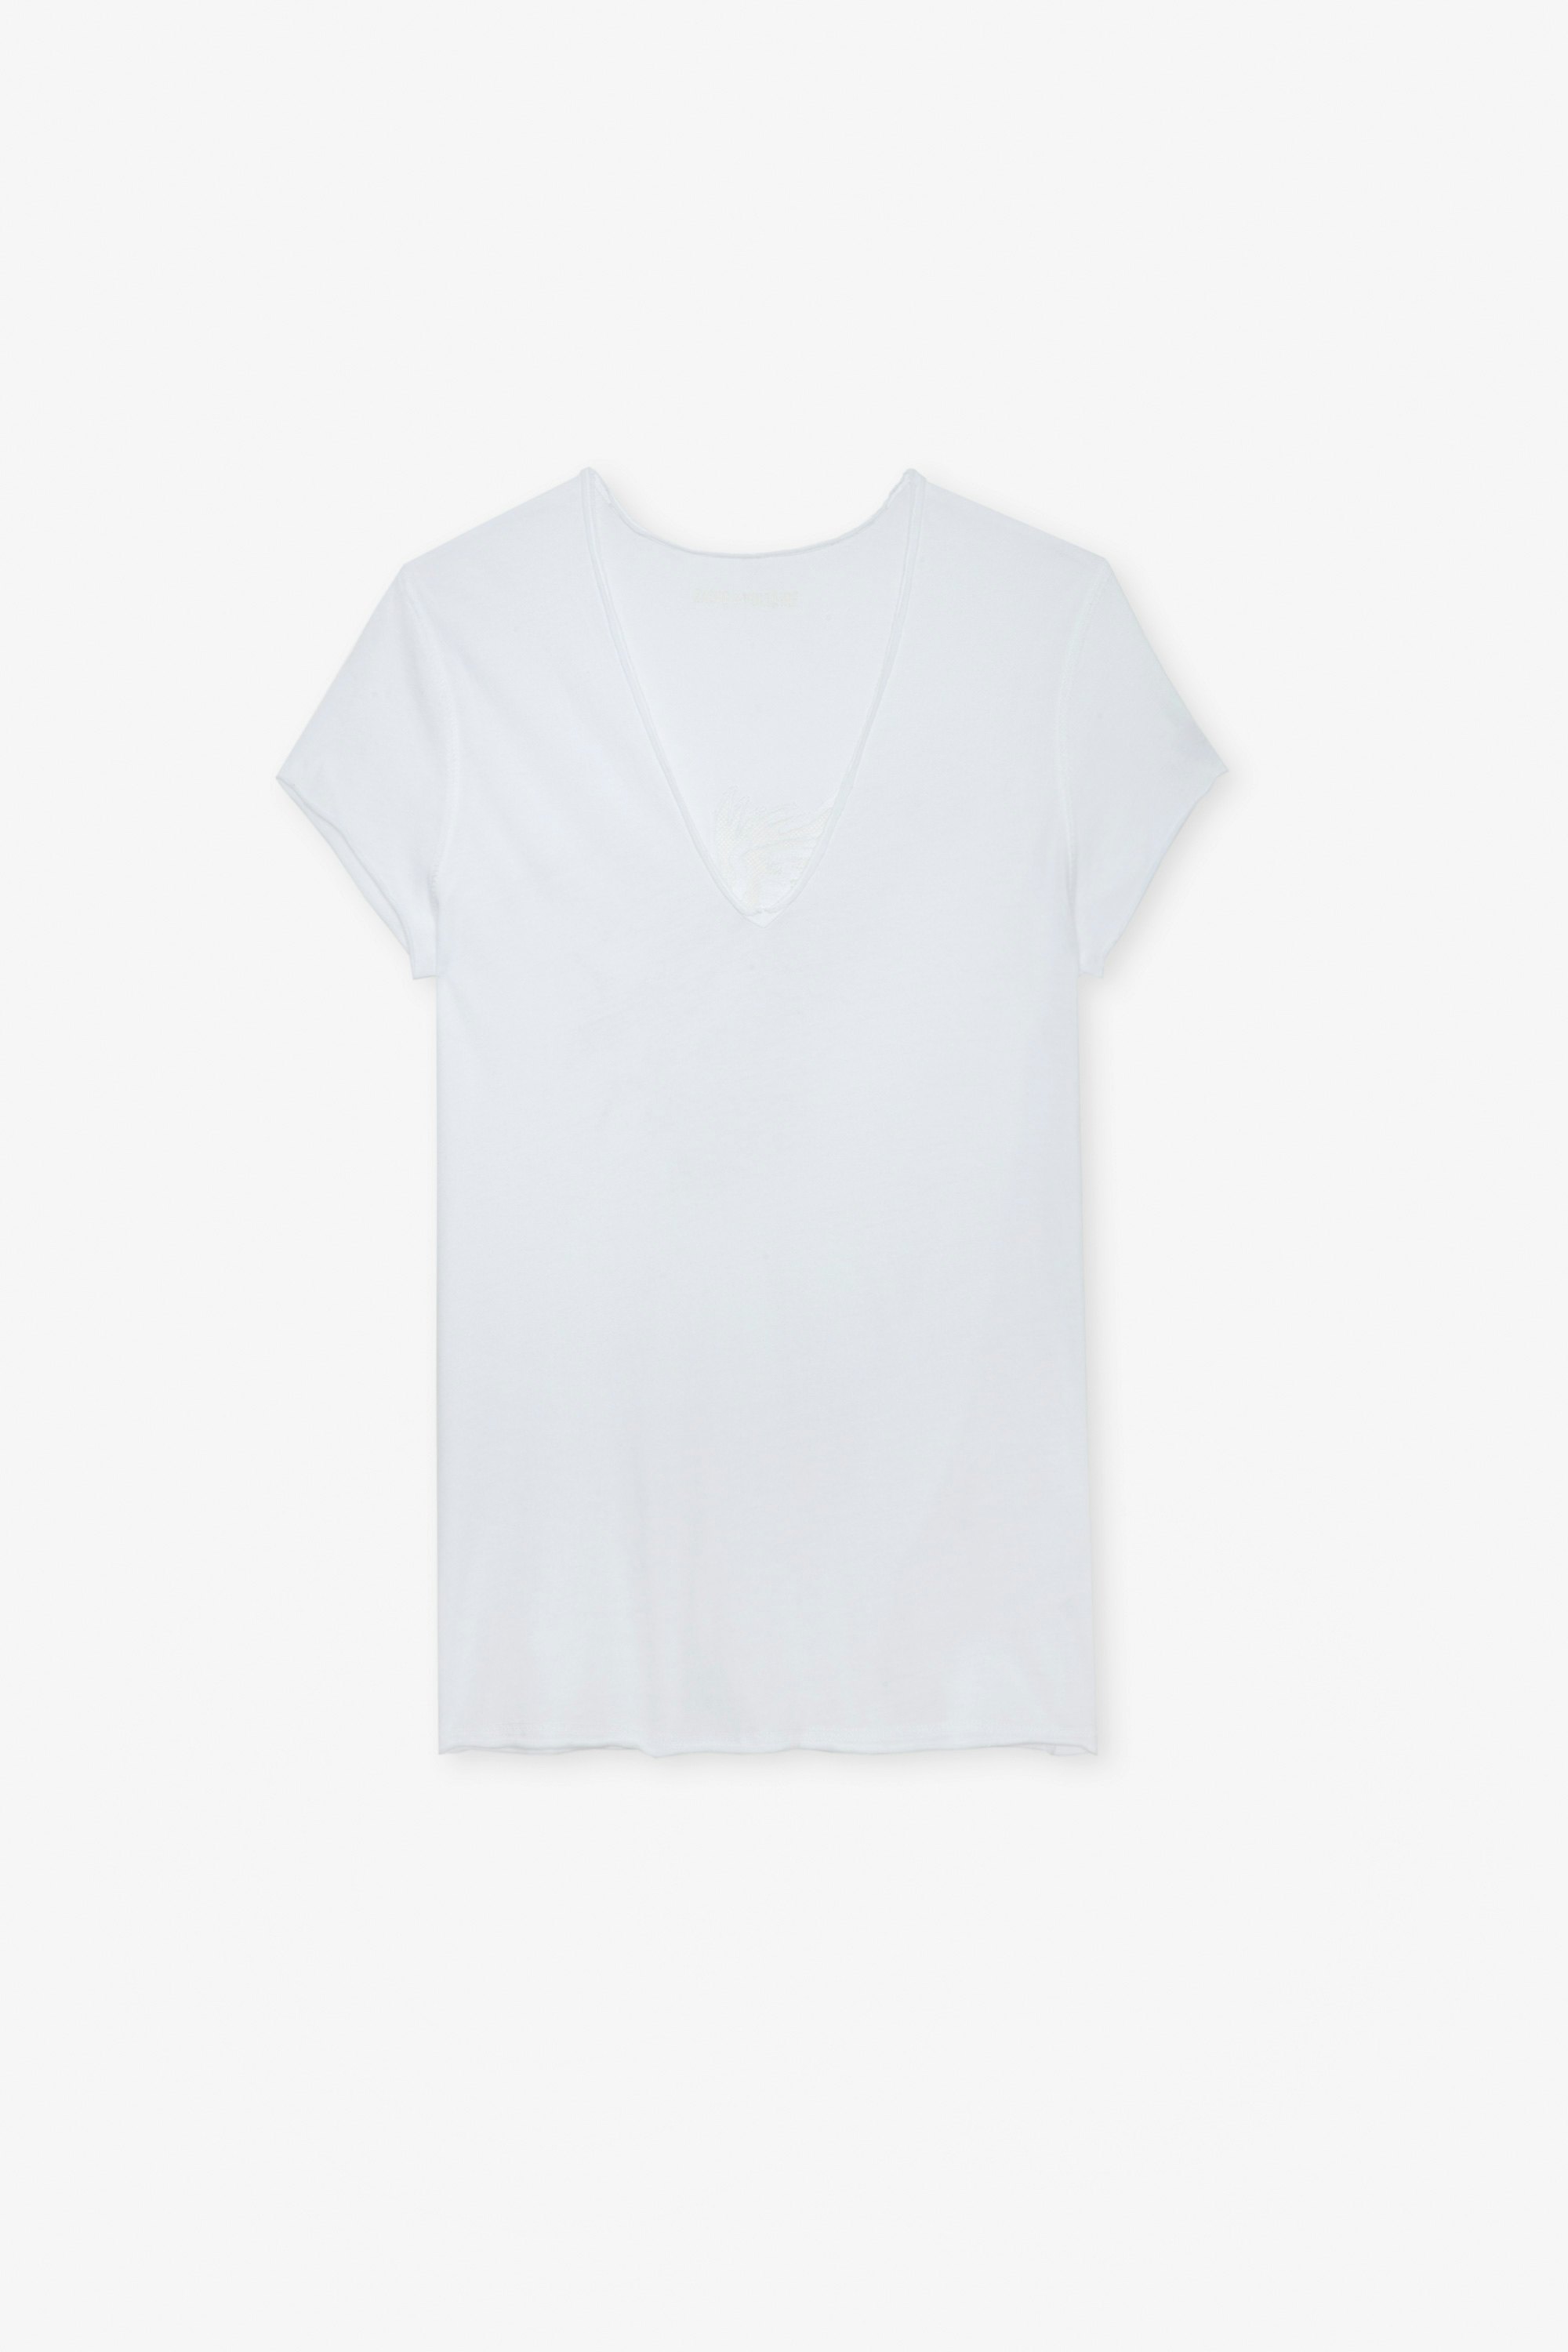 Camiseta Story Fishnet Camiseta blanca de algodón con bordado de águila en la parte trasera para mujer.